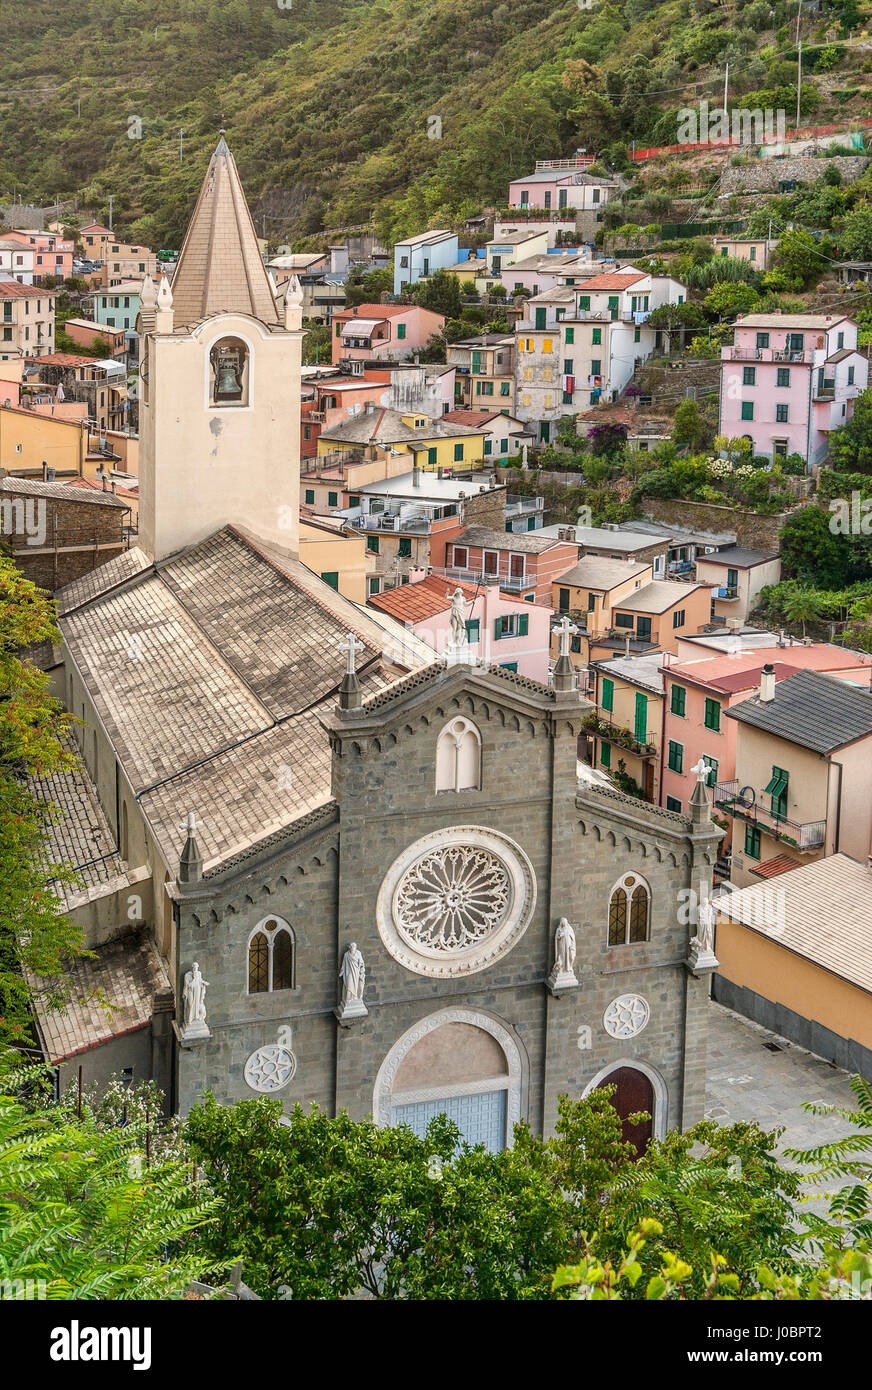 Chiesa San Giovanni Battista in the small village of Riomaggiore at the Parco Naturale Cinque Terre in Liguria, Italy. Stock Photo